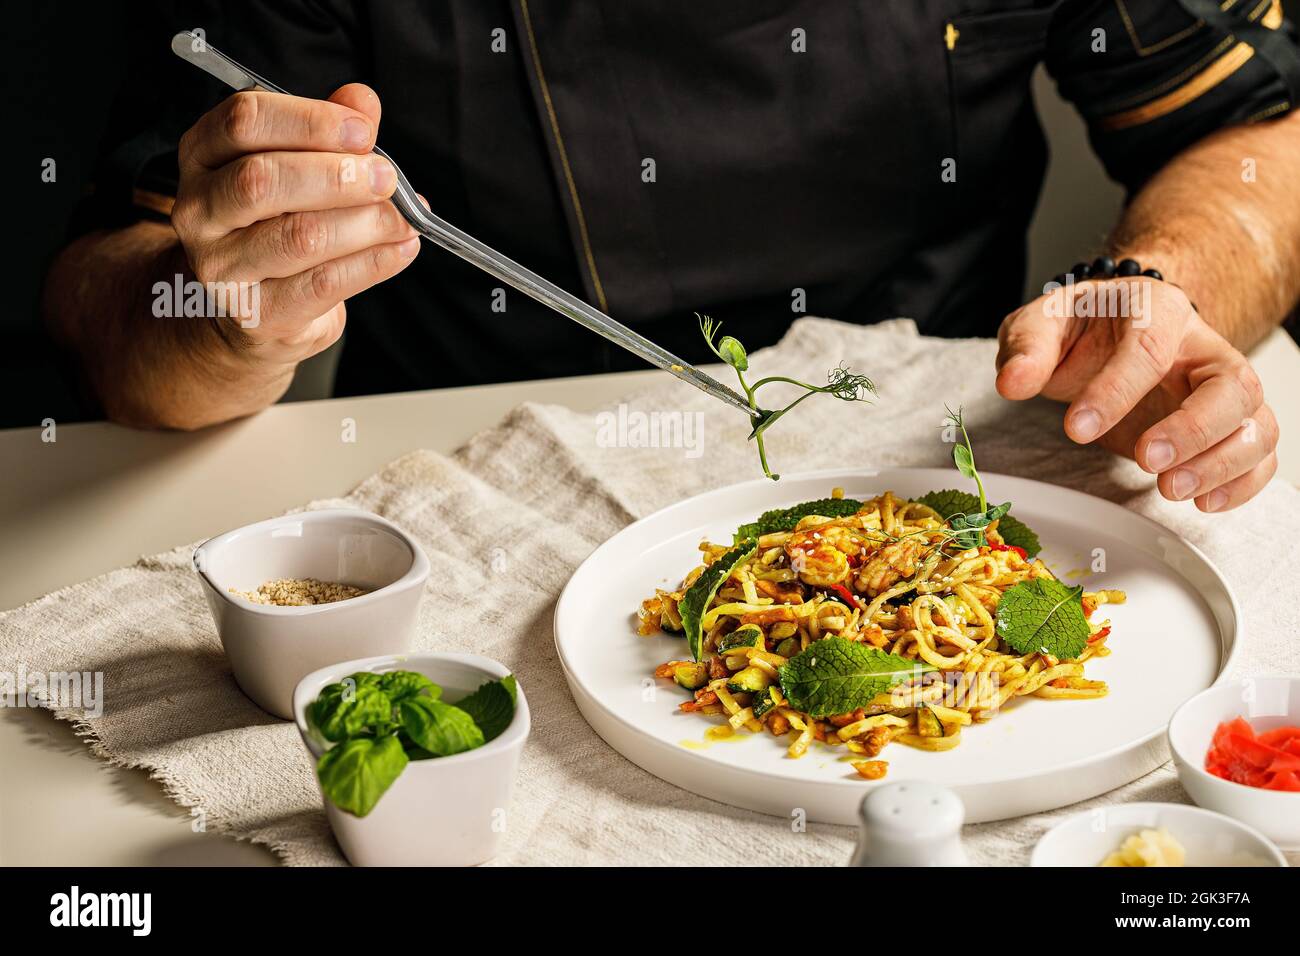 Spaghetti aux fruits de mer. Les mains du chef préparent des pâtes traditionnelles avec des fruits de mer. Le chef décorera le plat avec des herbes à l'aide de pinces. Resta Banque D'Images